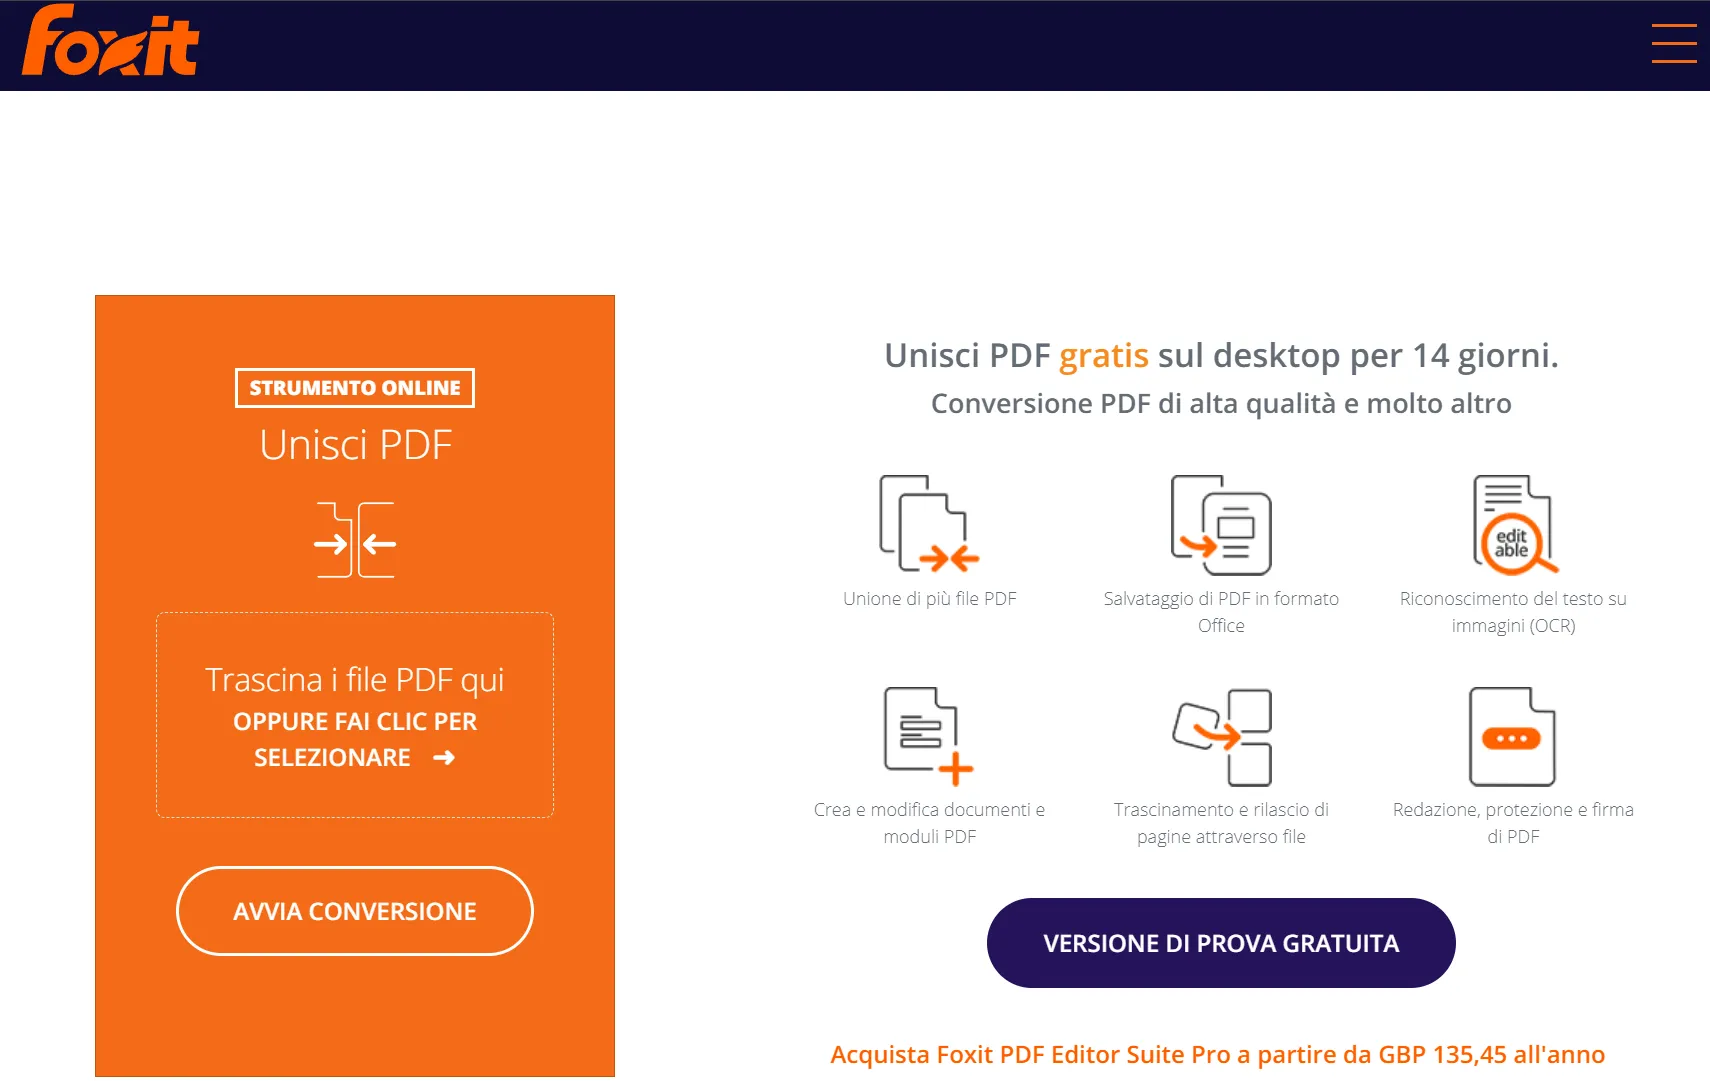 Unire PDF con Foxit online